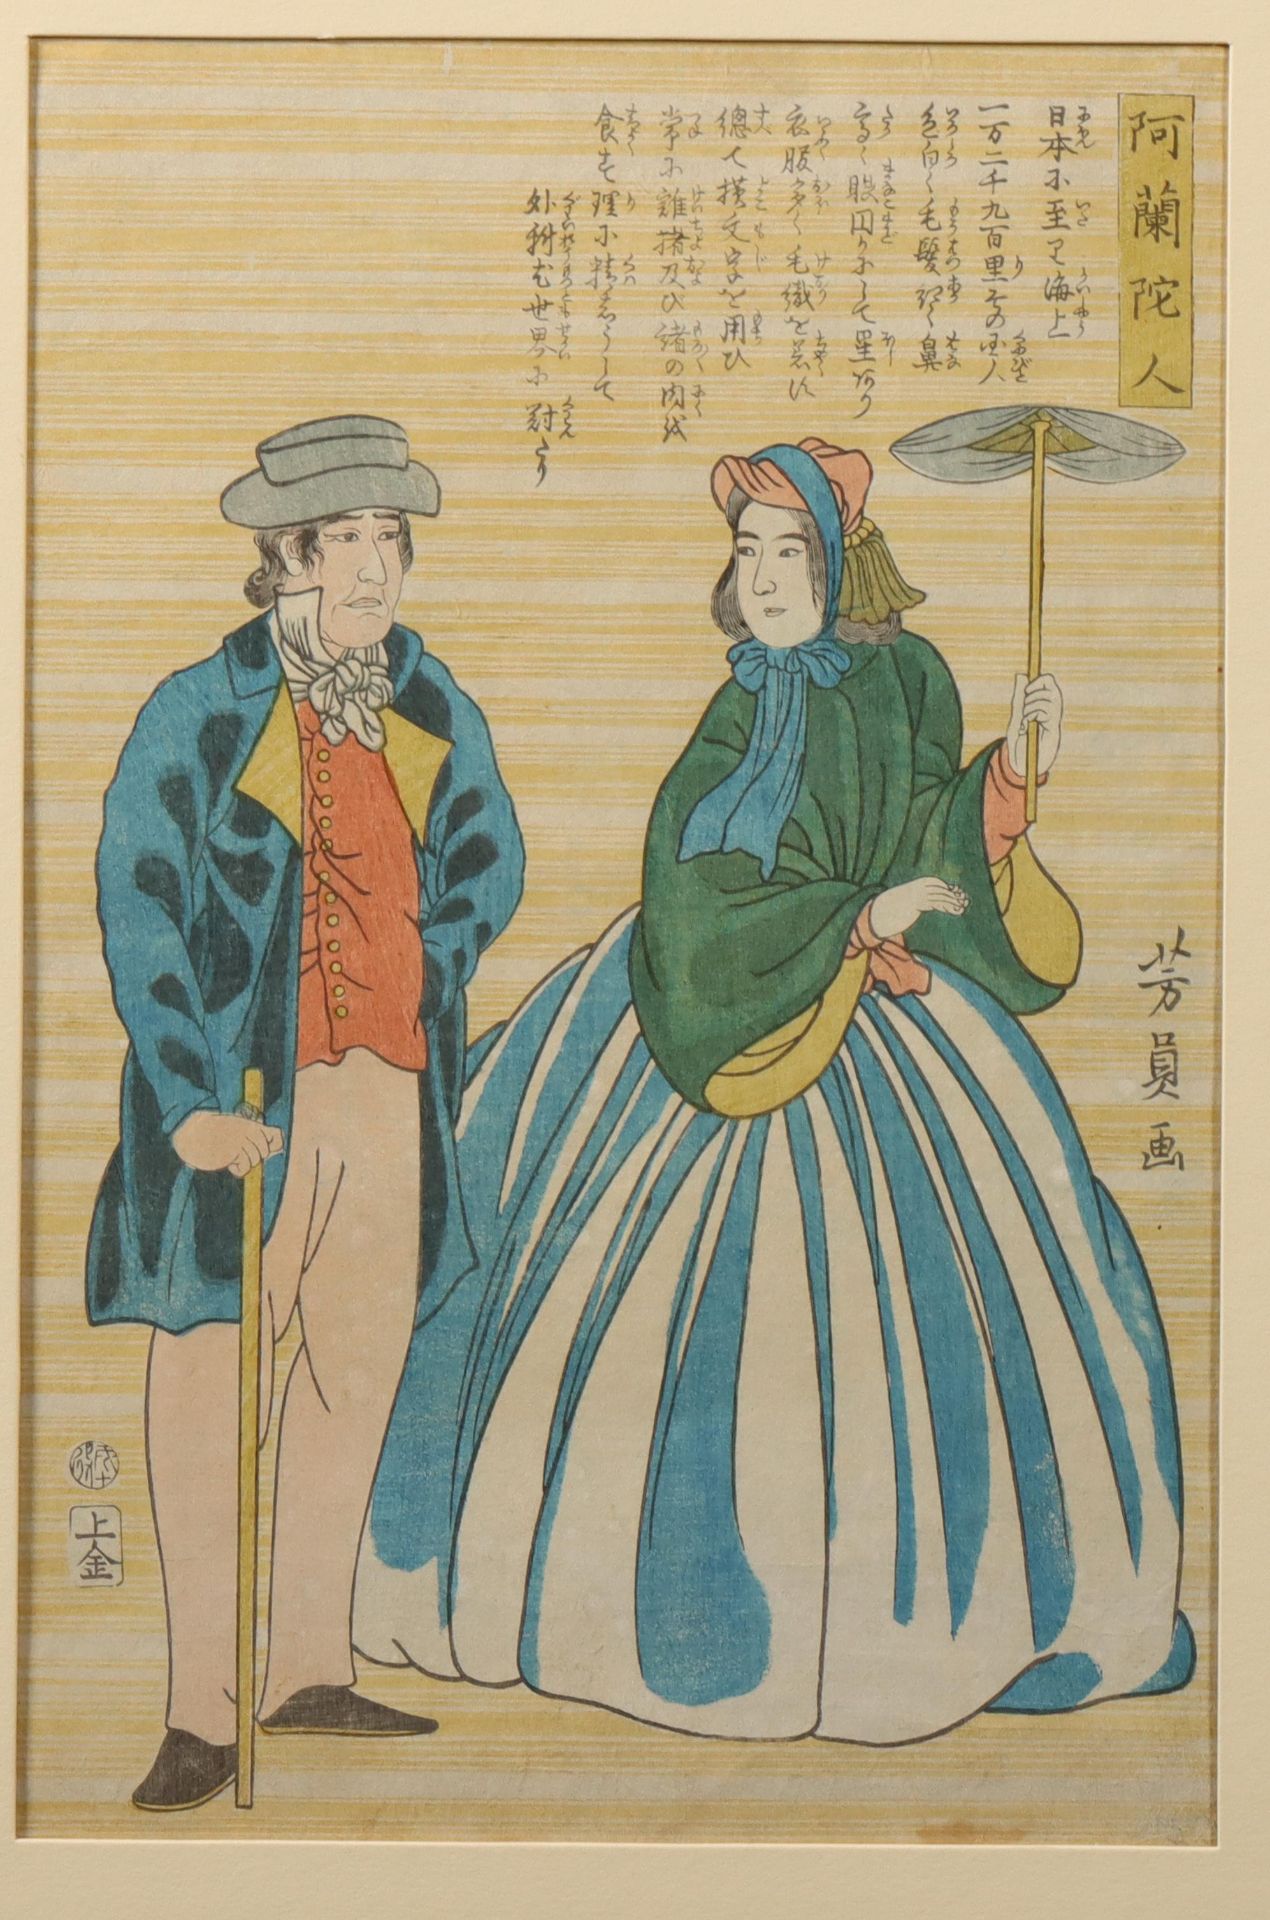 Japan, two woodblock prints by Utagawa Yoshikazu (act. 1850-1870)